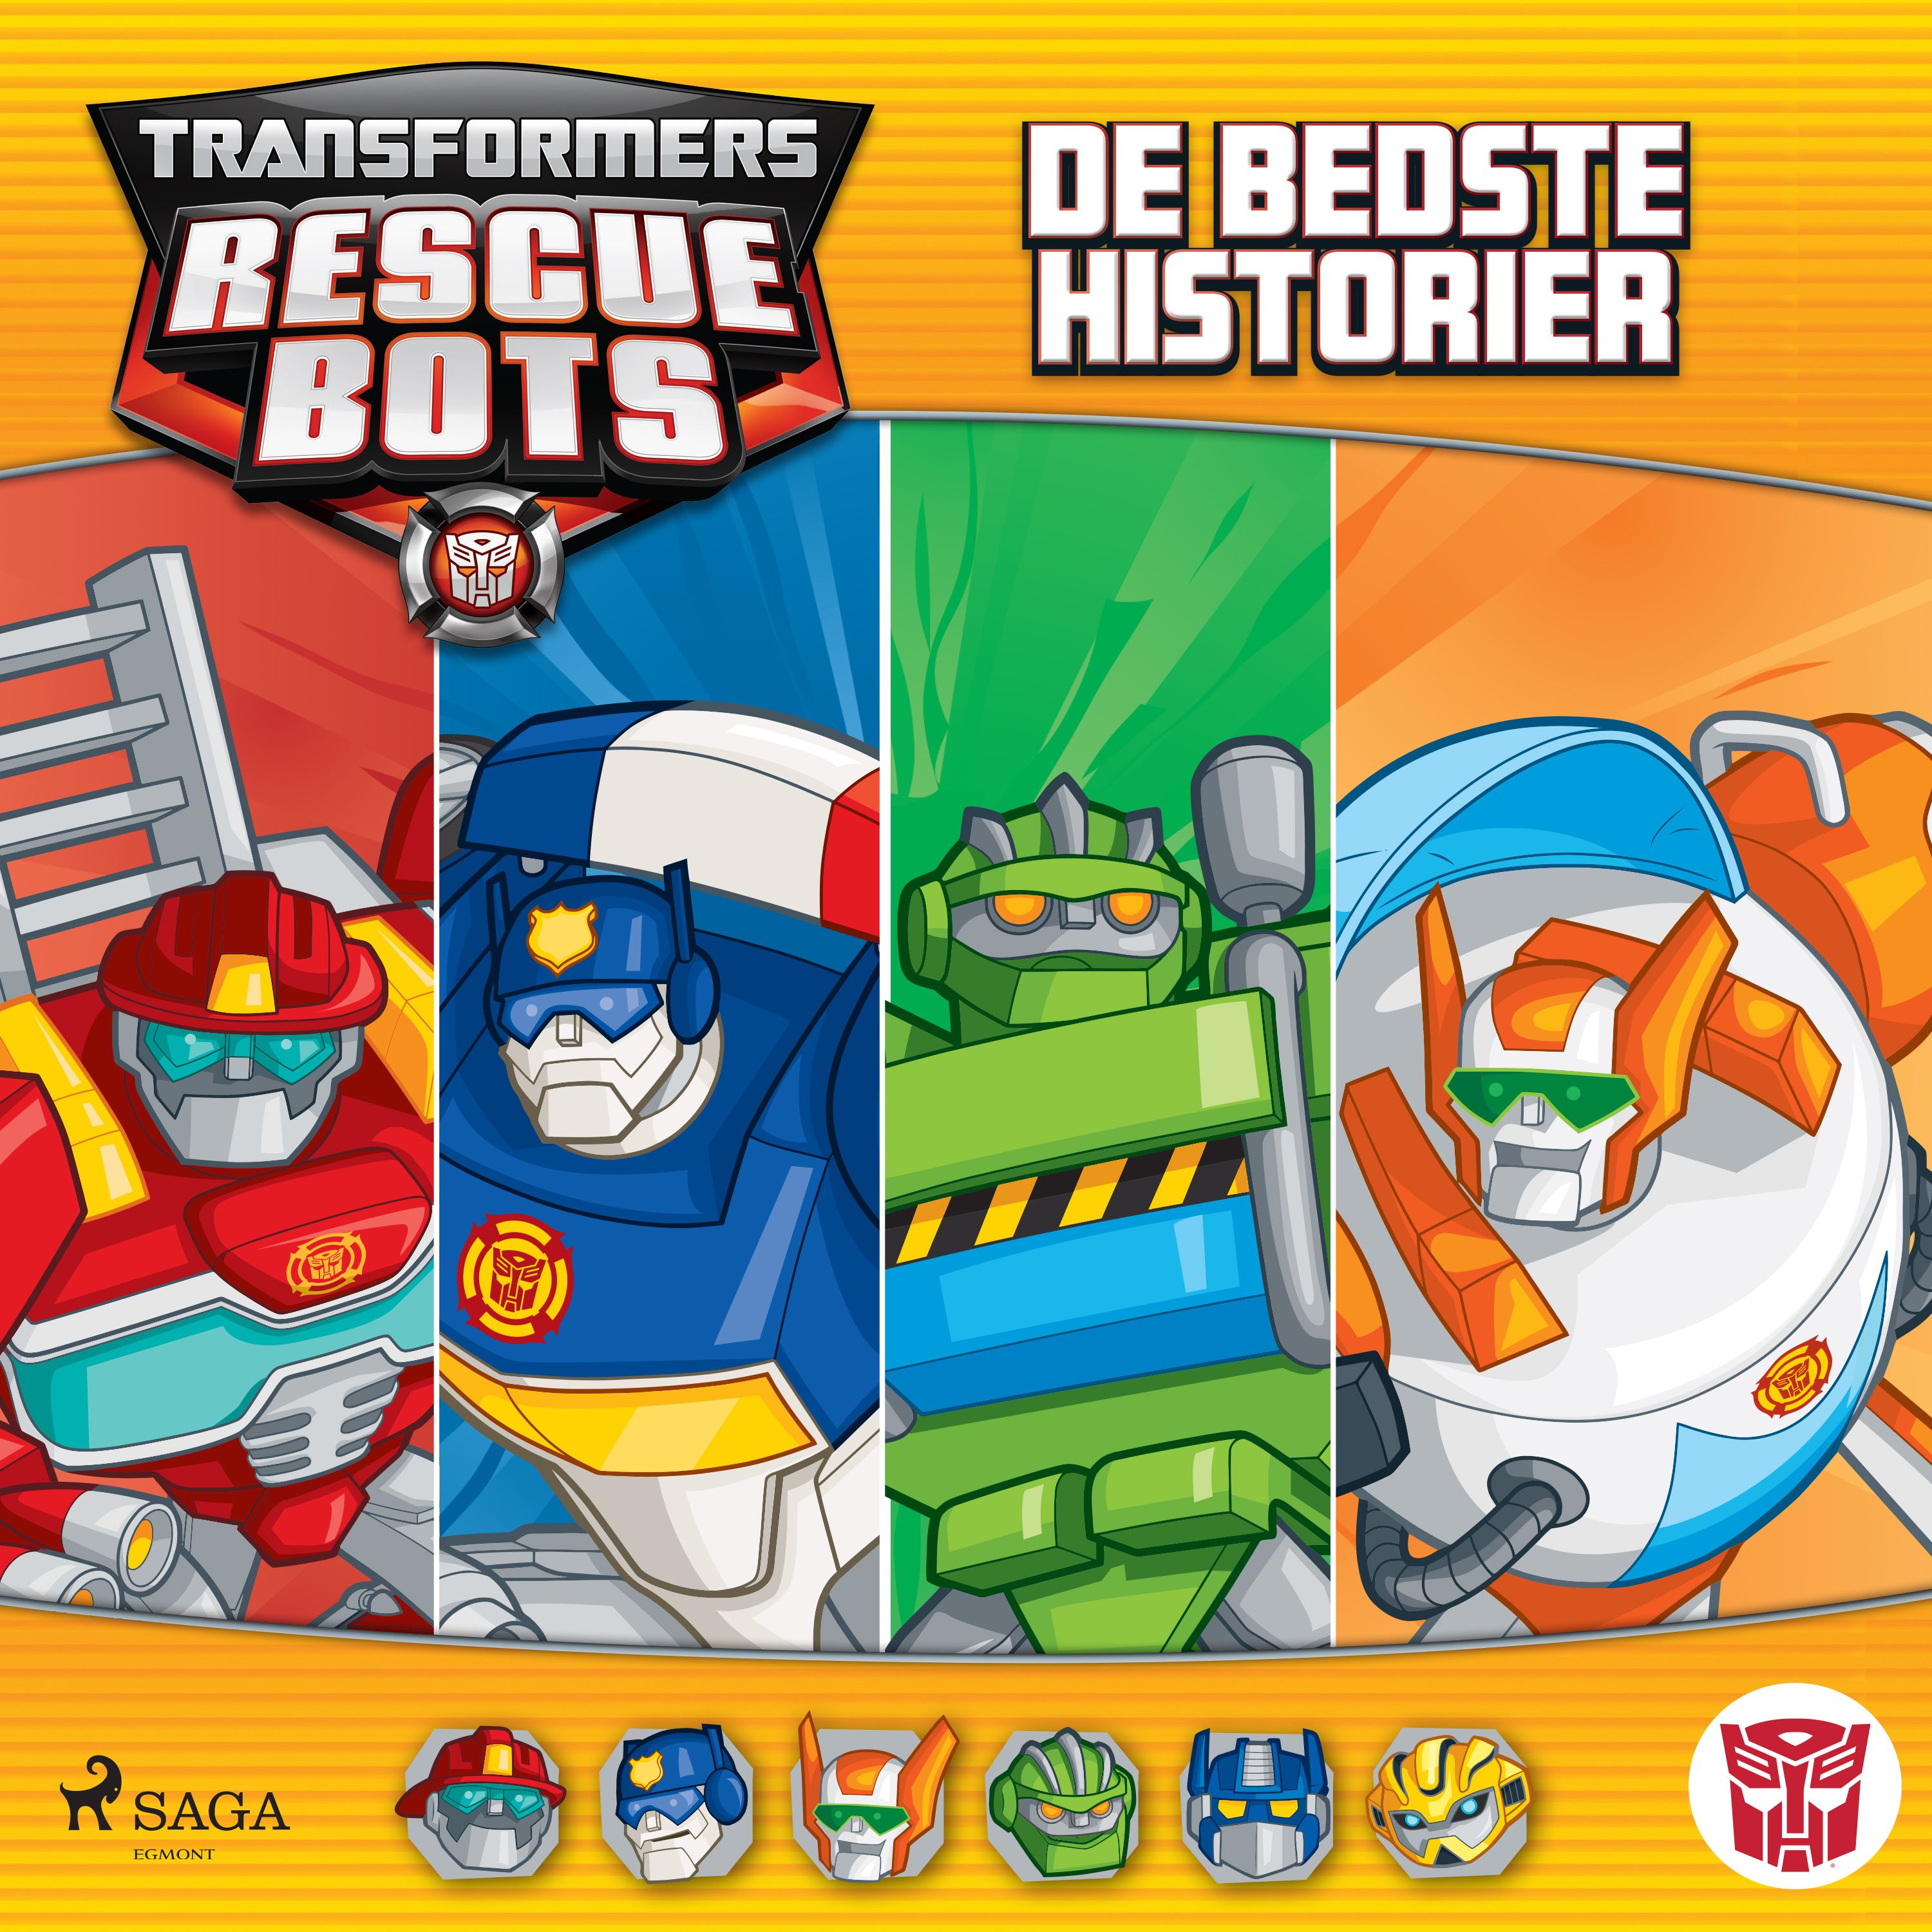 Transformers - Rescue Bots - De bedste historier, lydbog af Maya Mackowiak Elson, Lucy Rosen, John Sazaklis, Brandon T. Snider